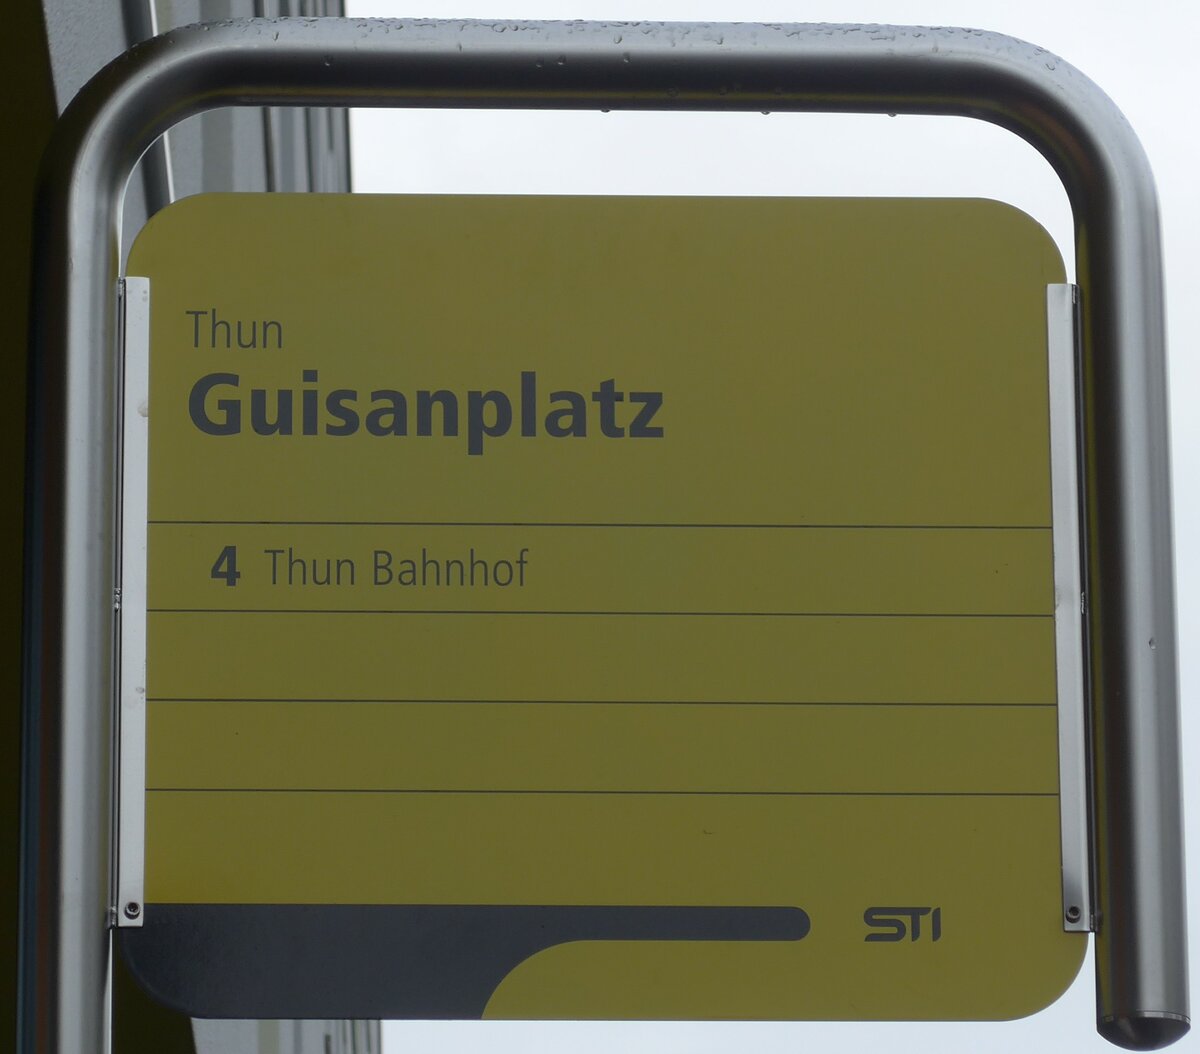 (157'715) - STI-Haltestellenschild - Thun, Guisanplatz - am 8. Dezember 2014